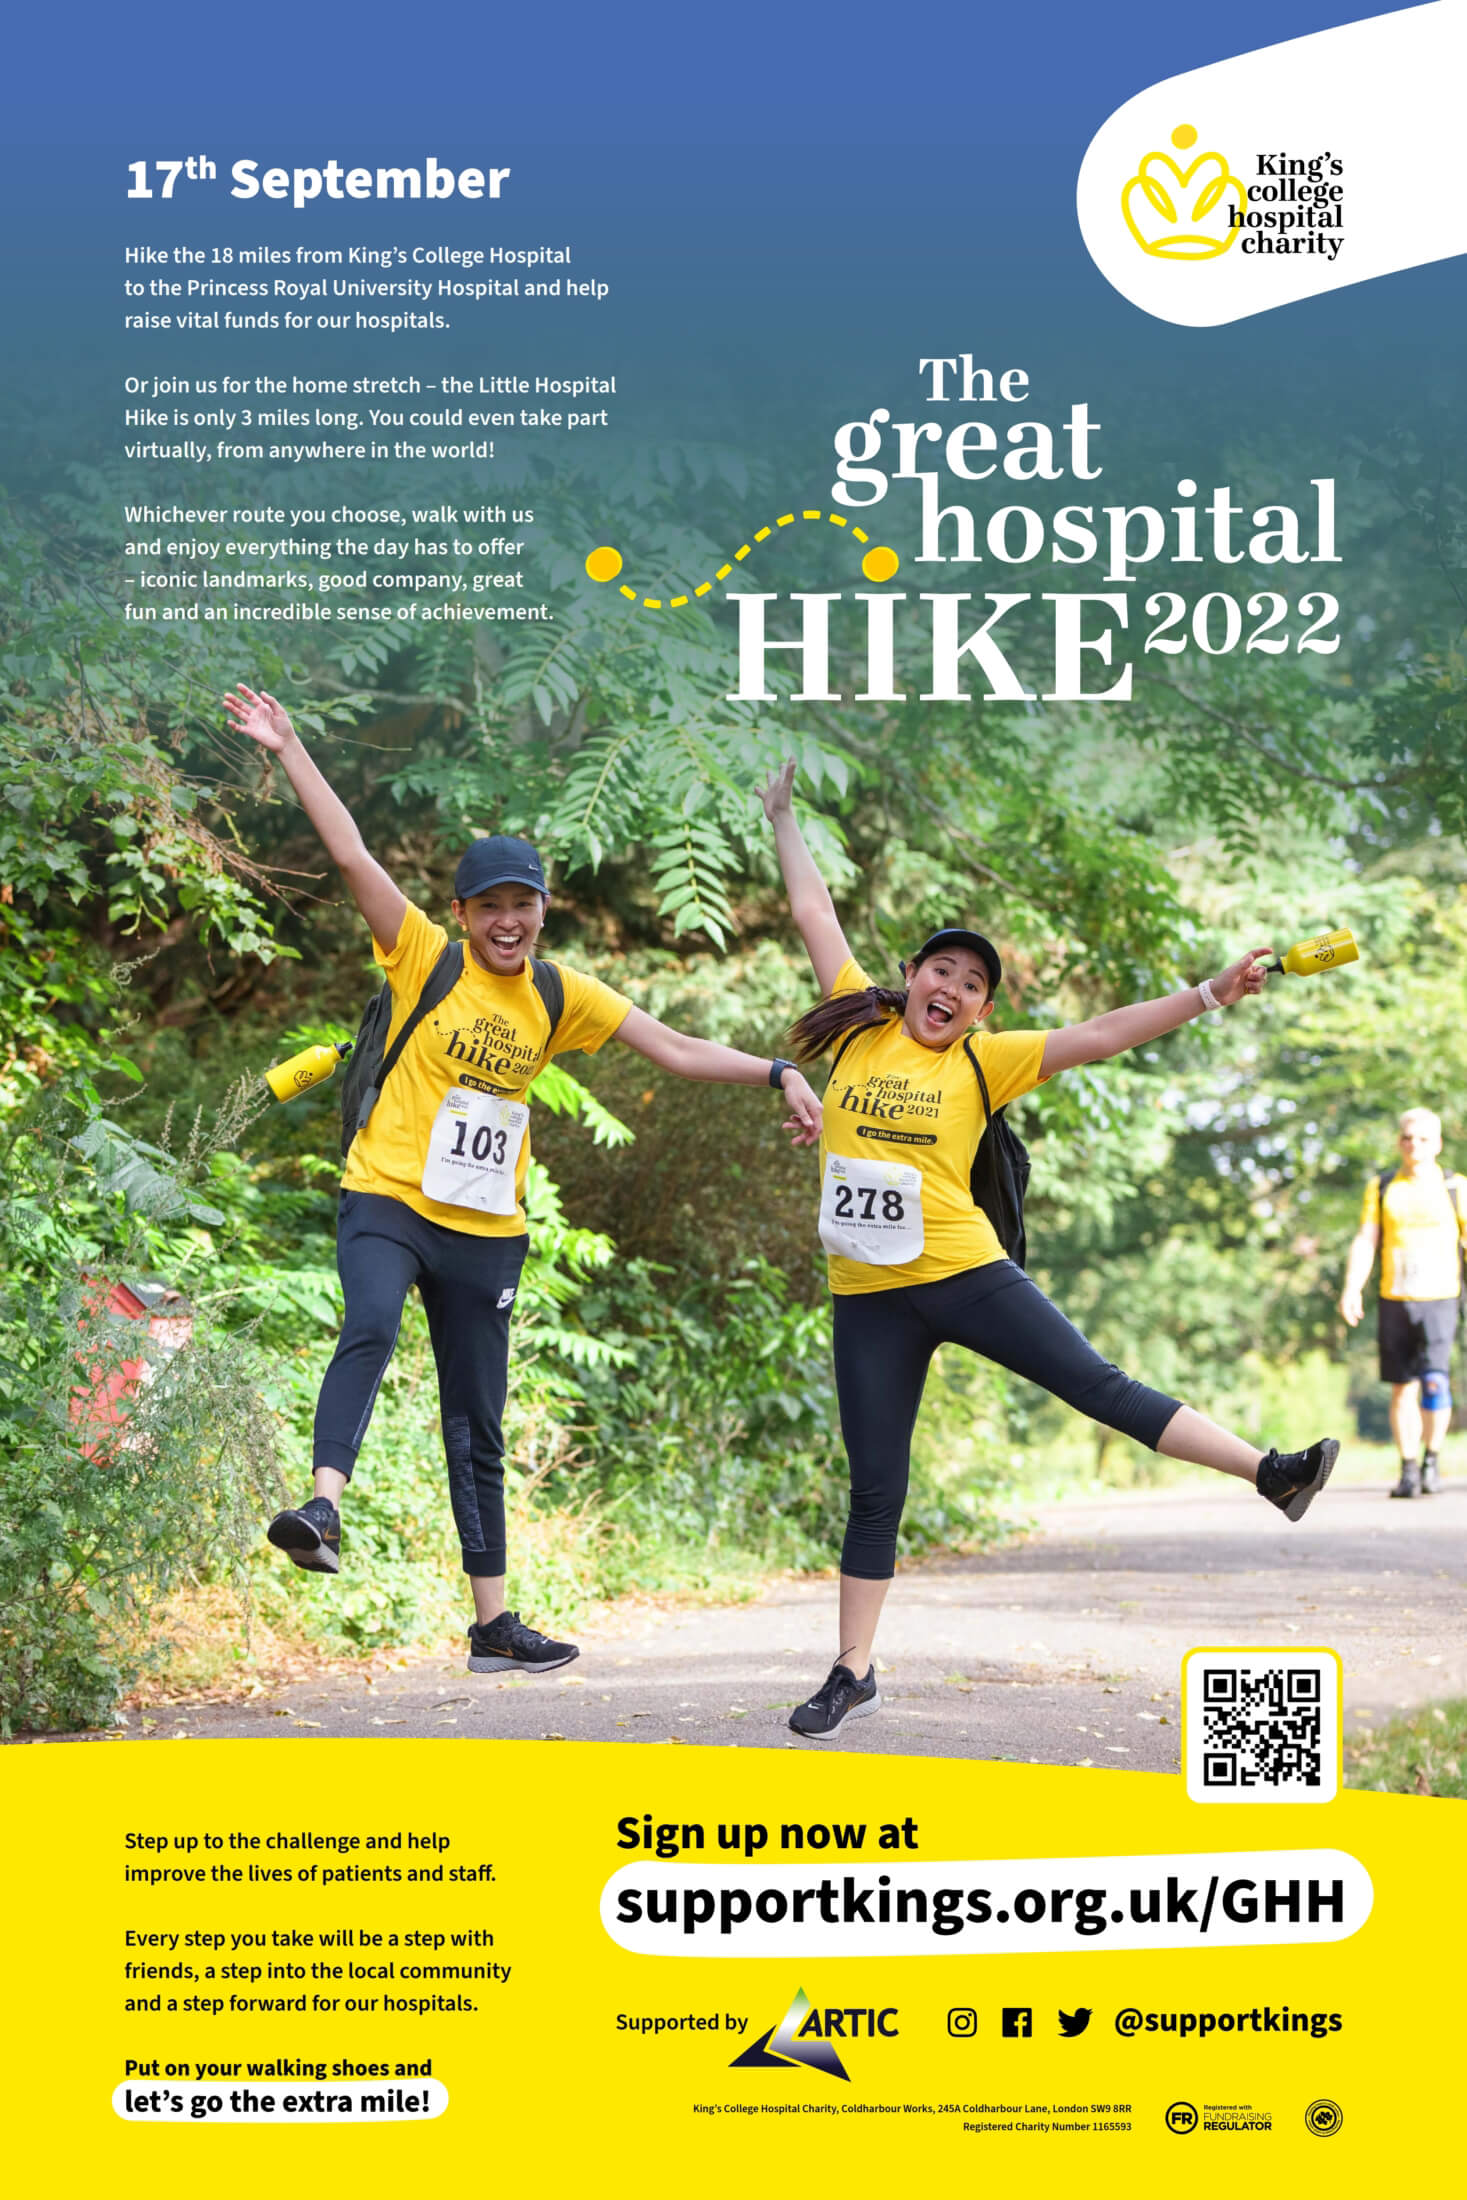 Great Hospital Hike 2022